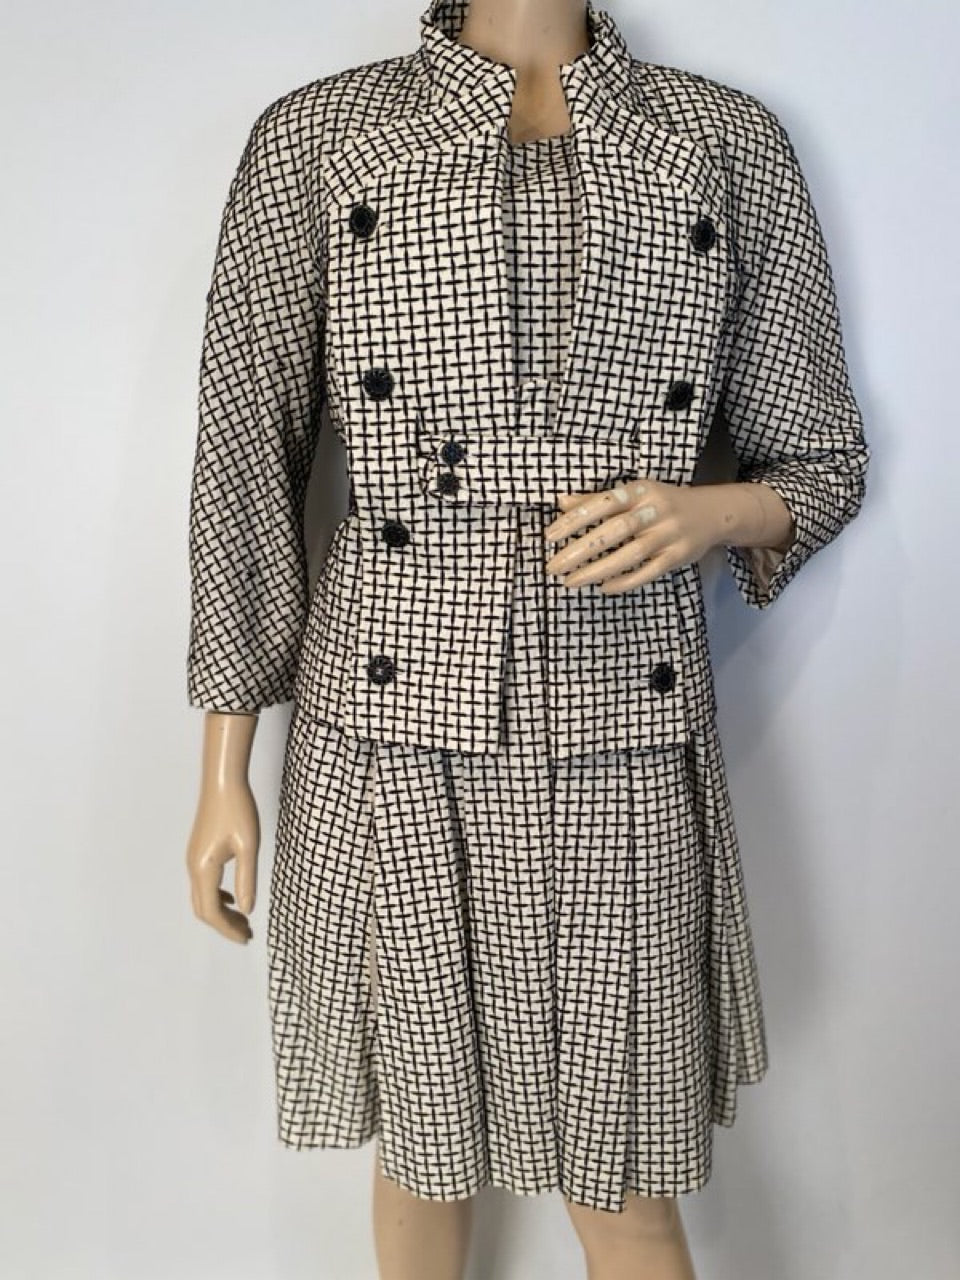 HelensChanel Chanel 10P Tweed Jacket and Dress 2 Piece Set